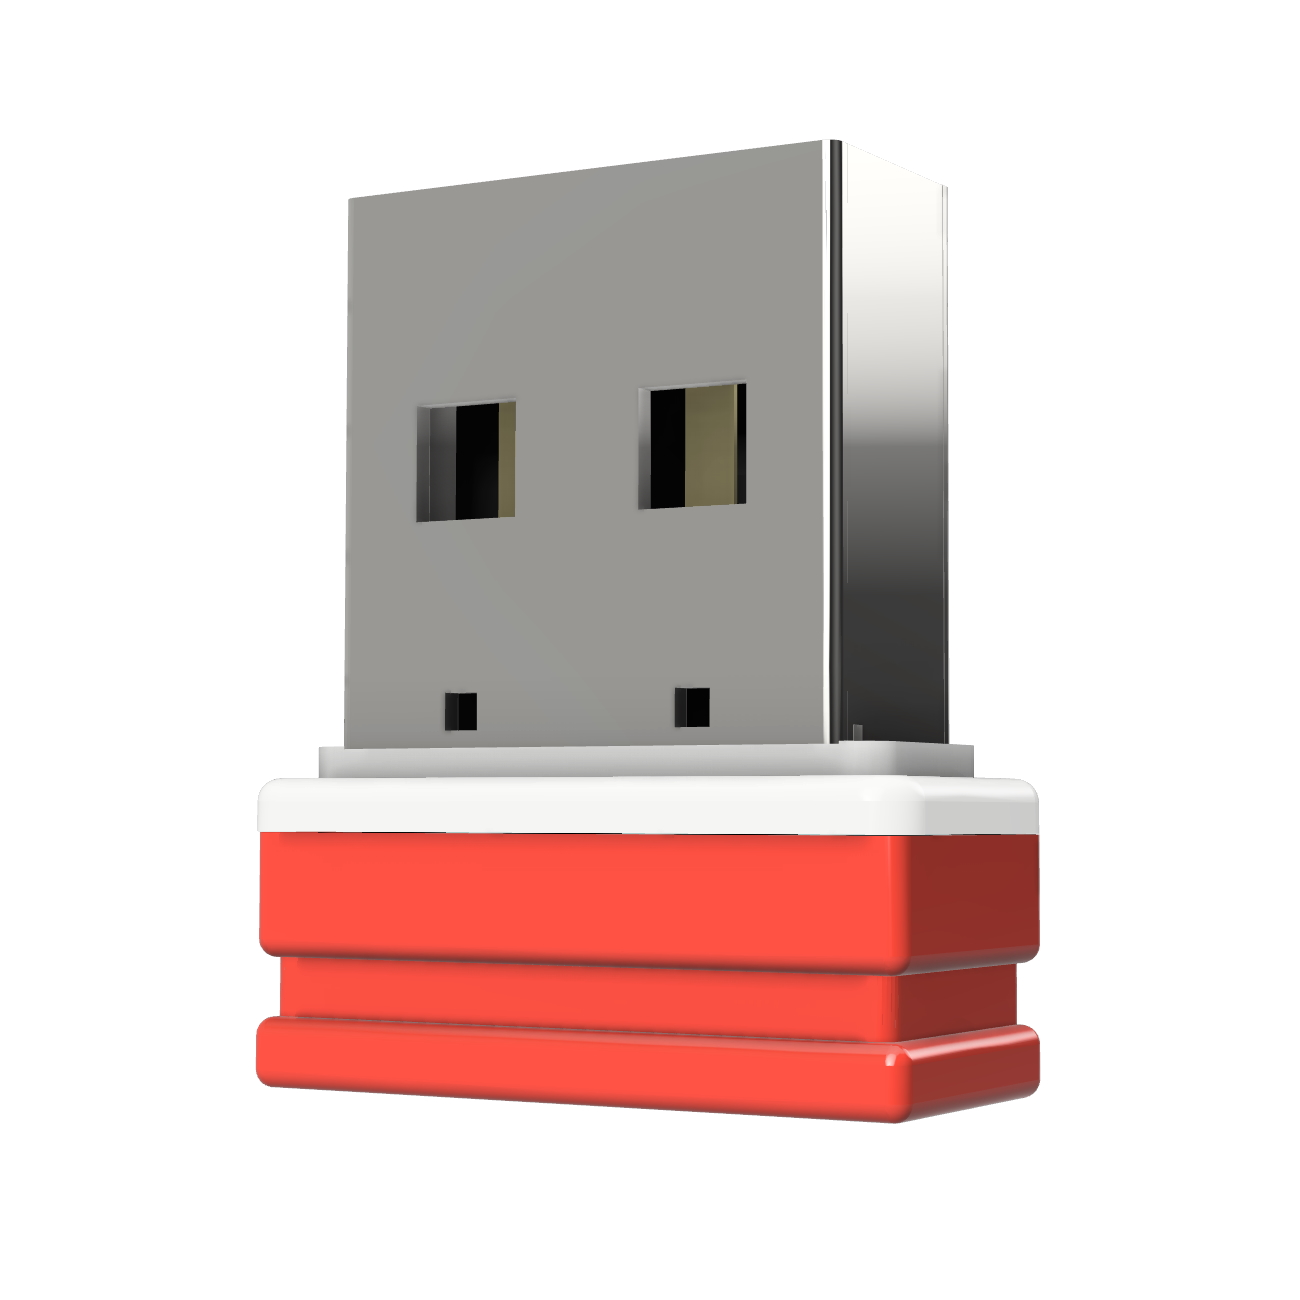 64 Mini GERMANY USB-Stick ®ULTRA P1 (Rot/Weiss, GB) USB